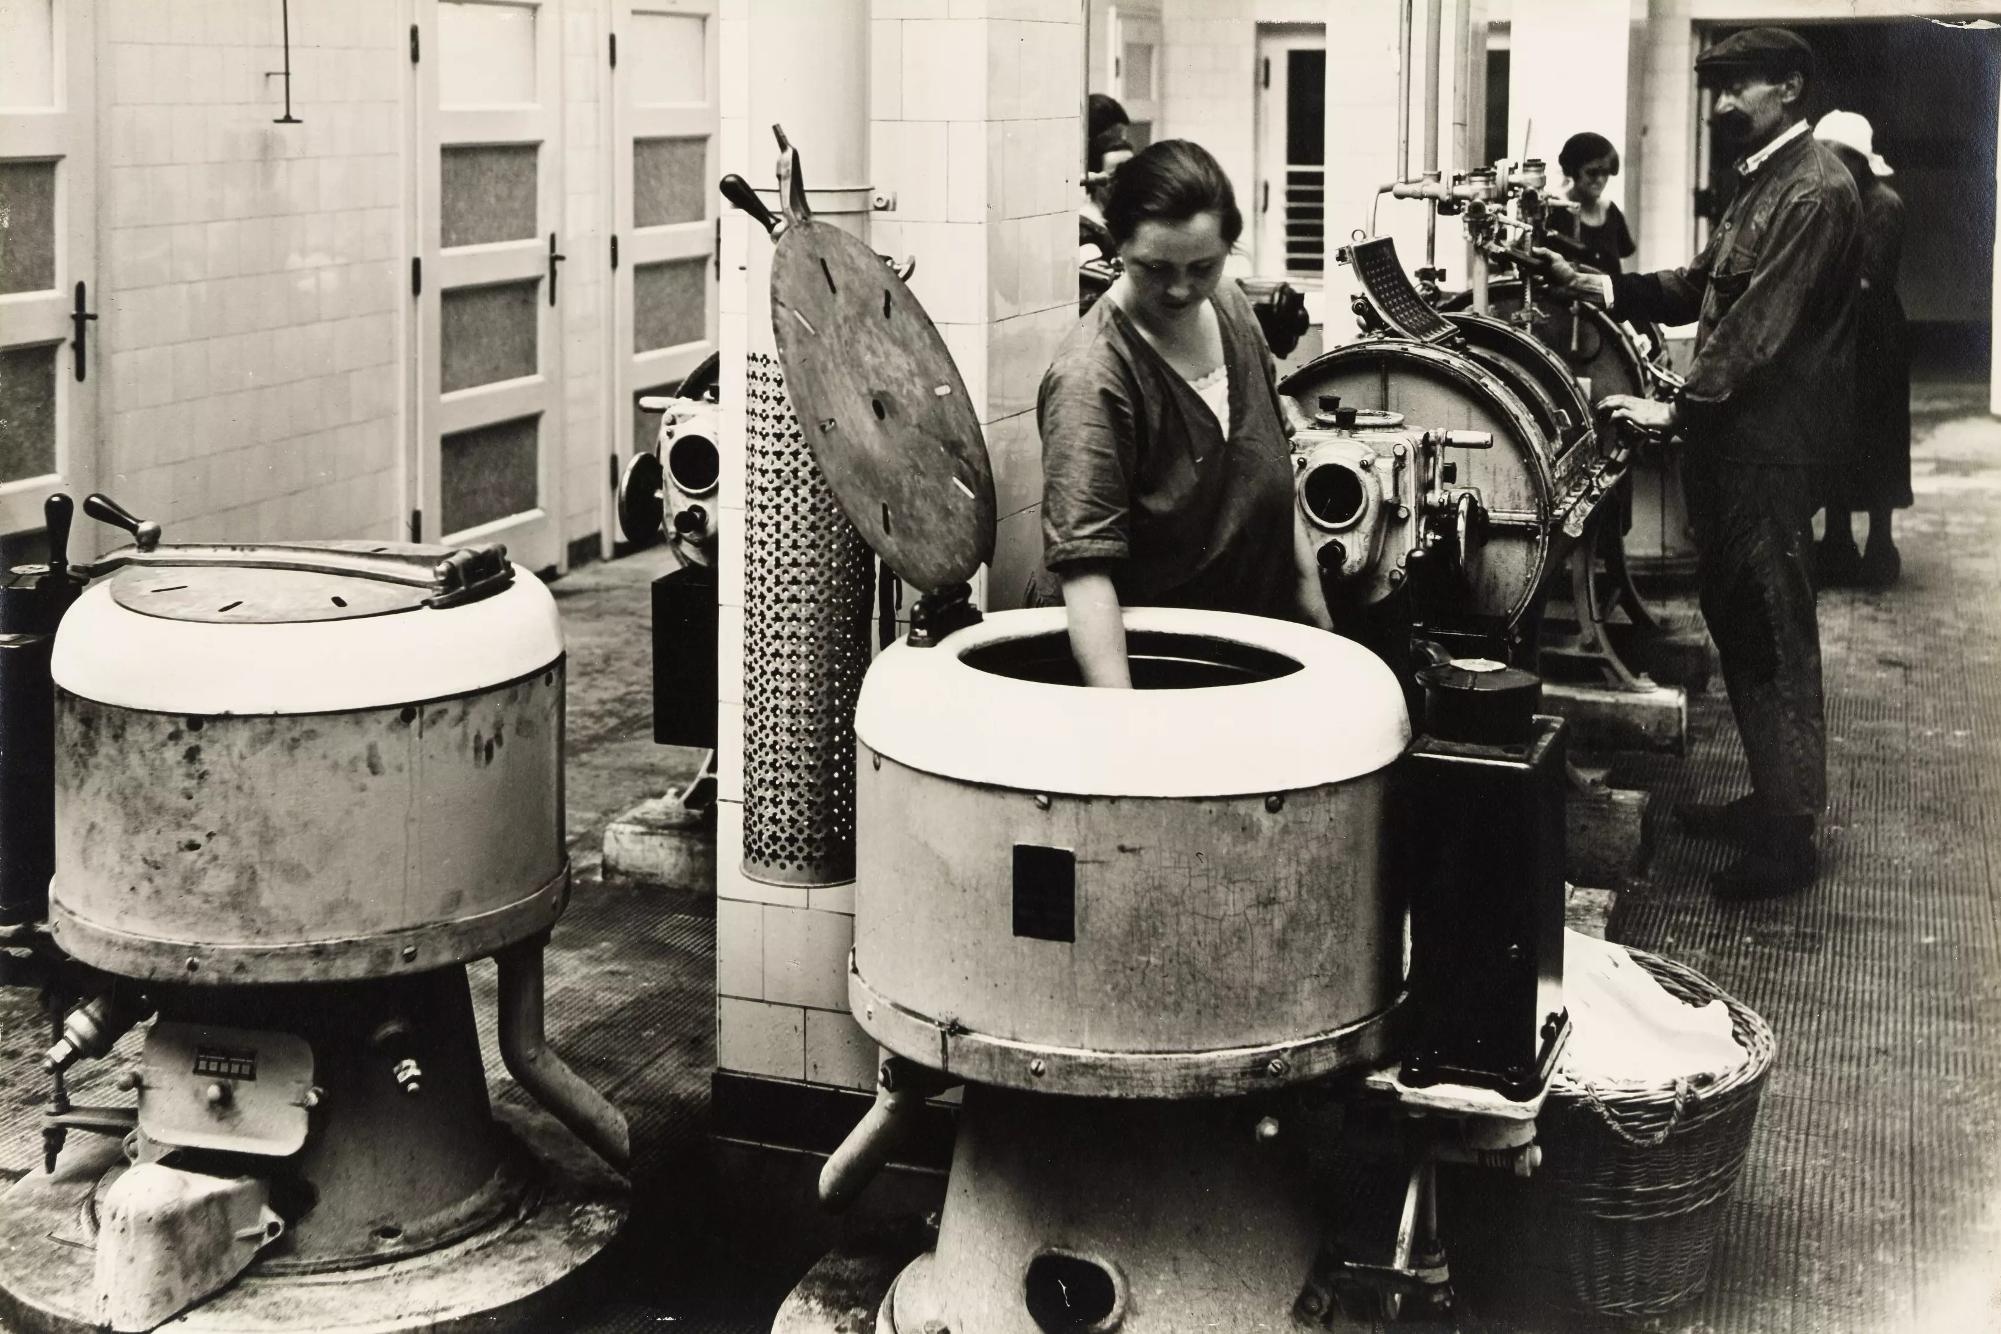 Eine Frau holt Wäsche aus dem Trog einer großen Waschtrommel, dahinter ein Mann und zwei Frauen an Waschgeräten. © © Wien Museum